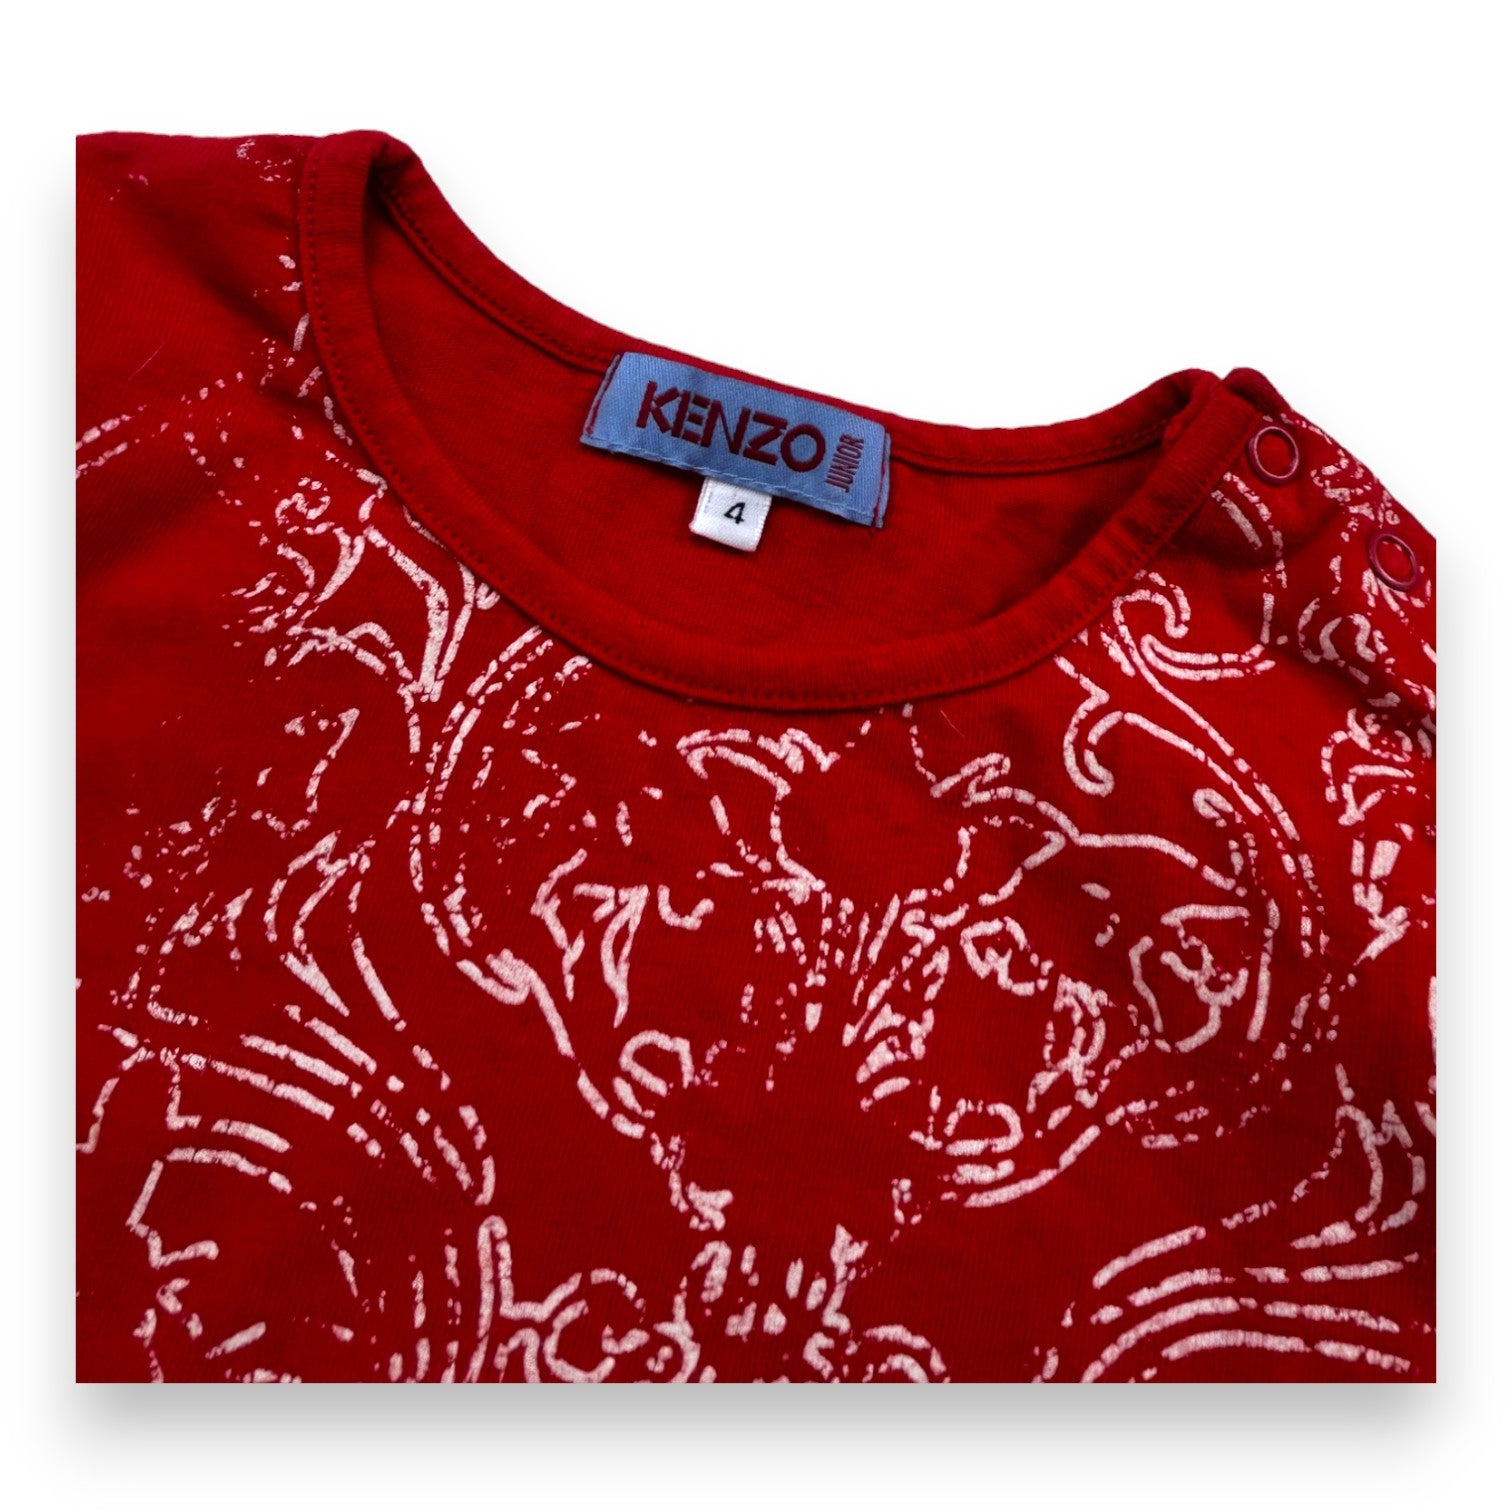 KENZO - T-shirt manches longues évasés rouge dessin graphique - 4 ans